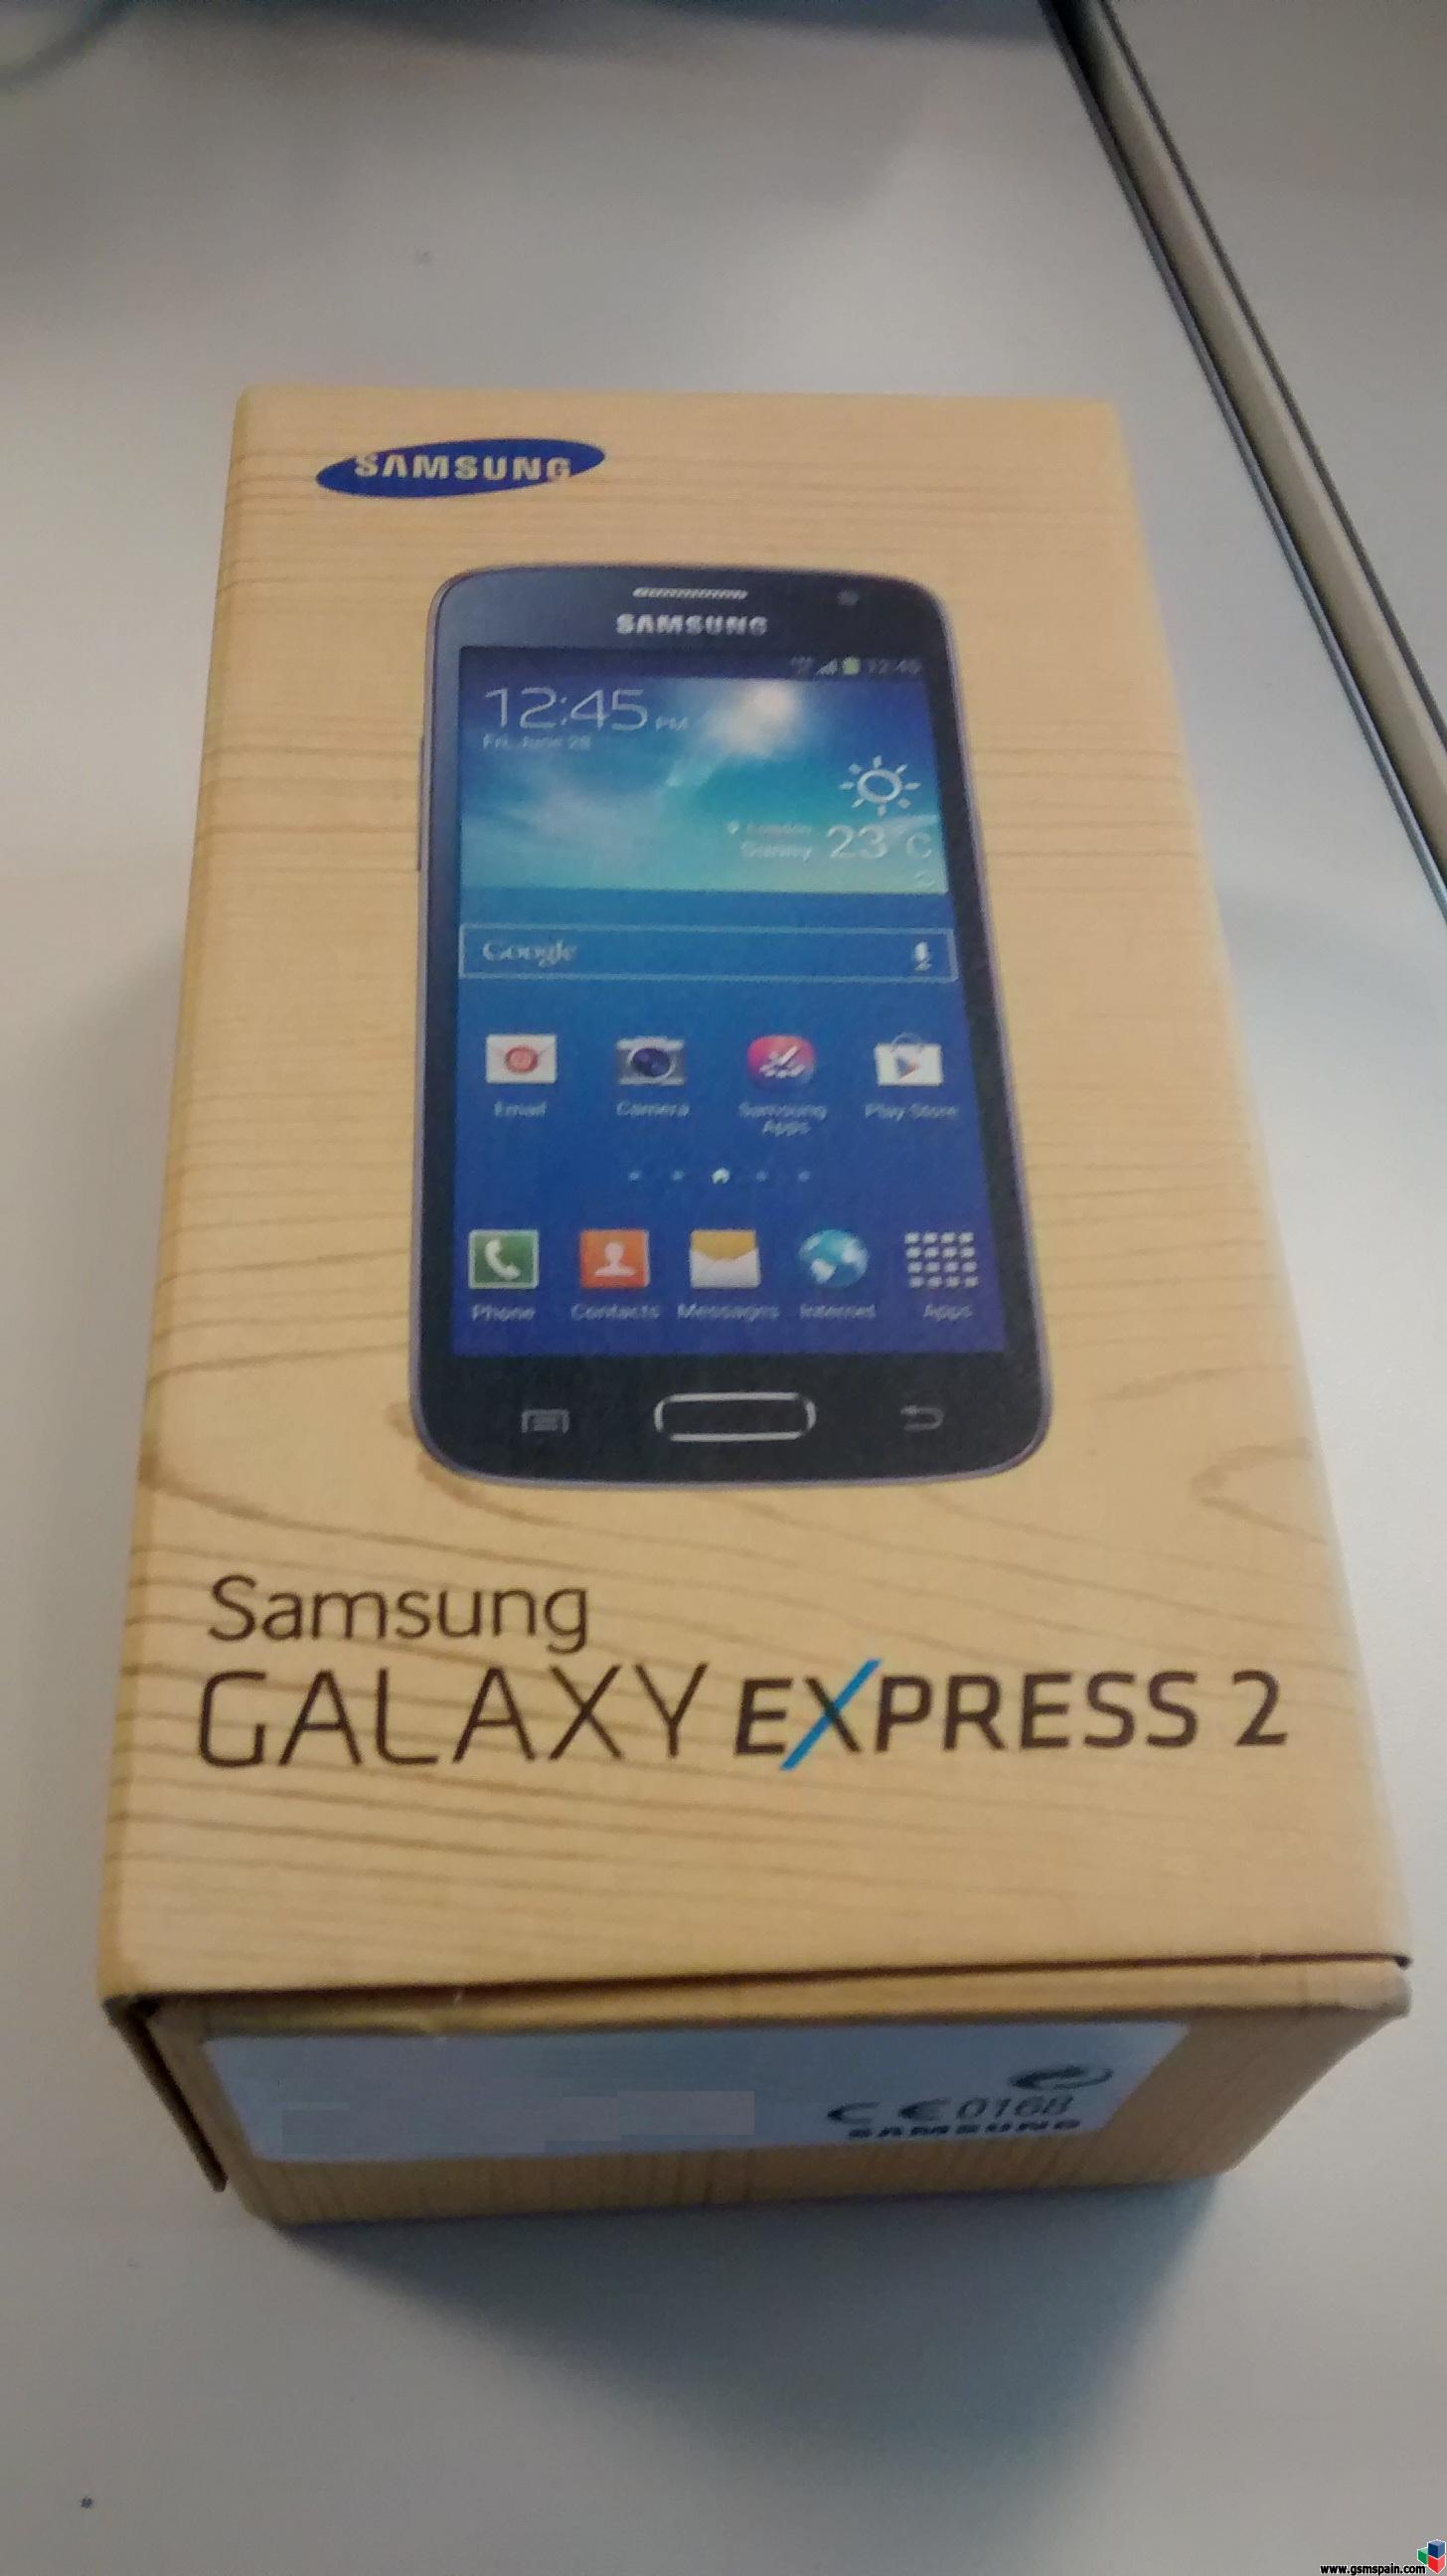 [VENDO] Samsung galaxy express 2 nuevo y precintado